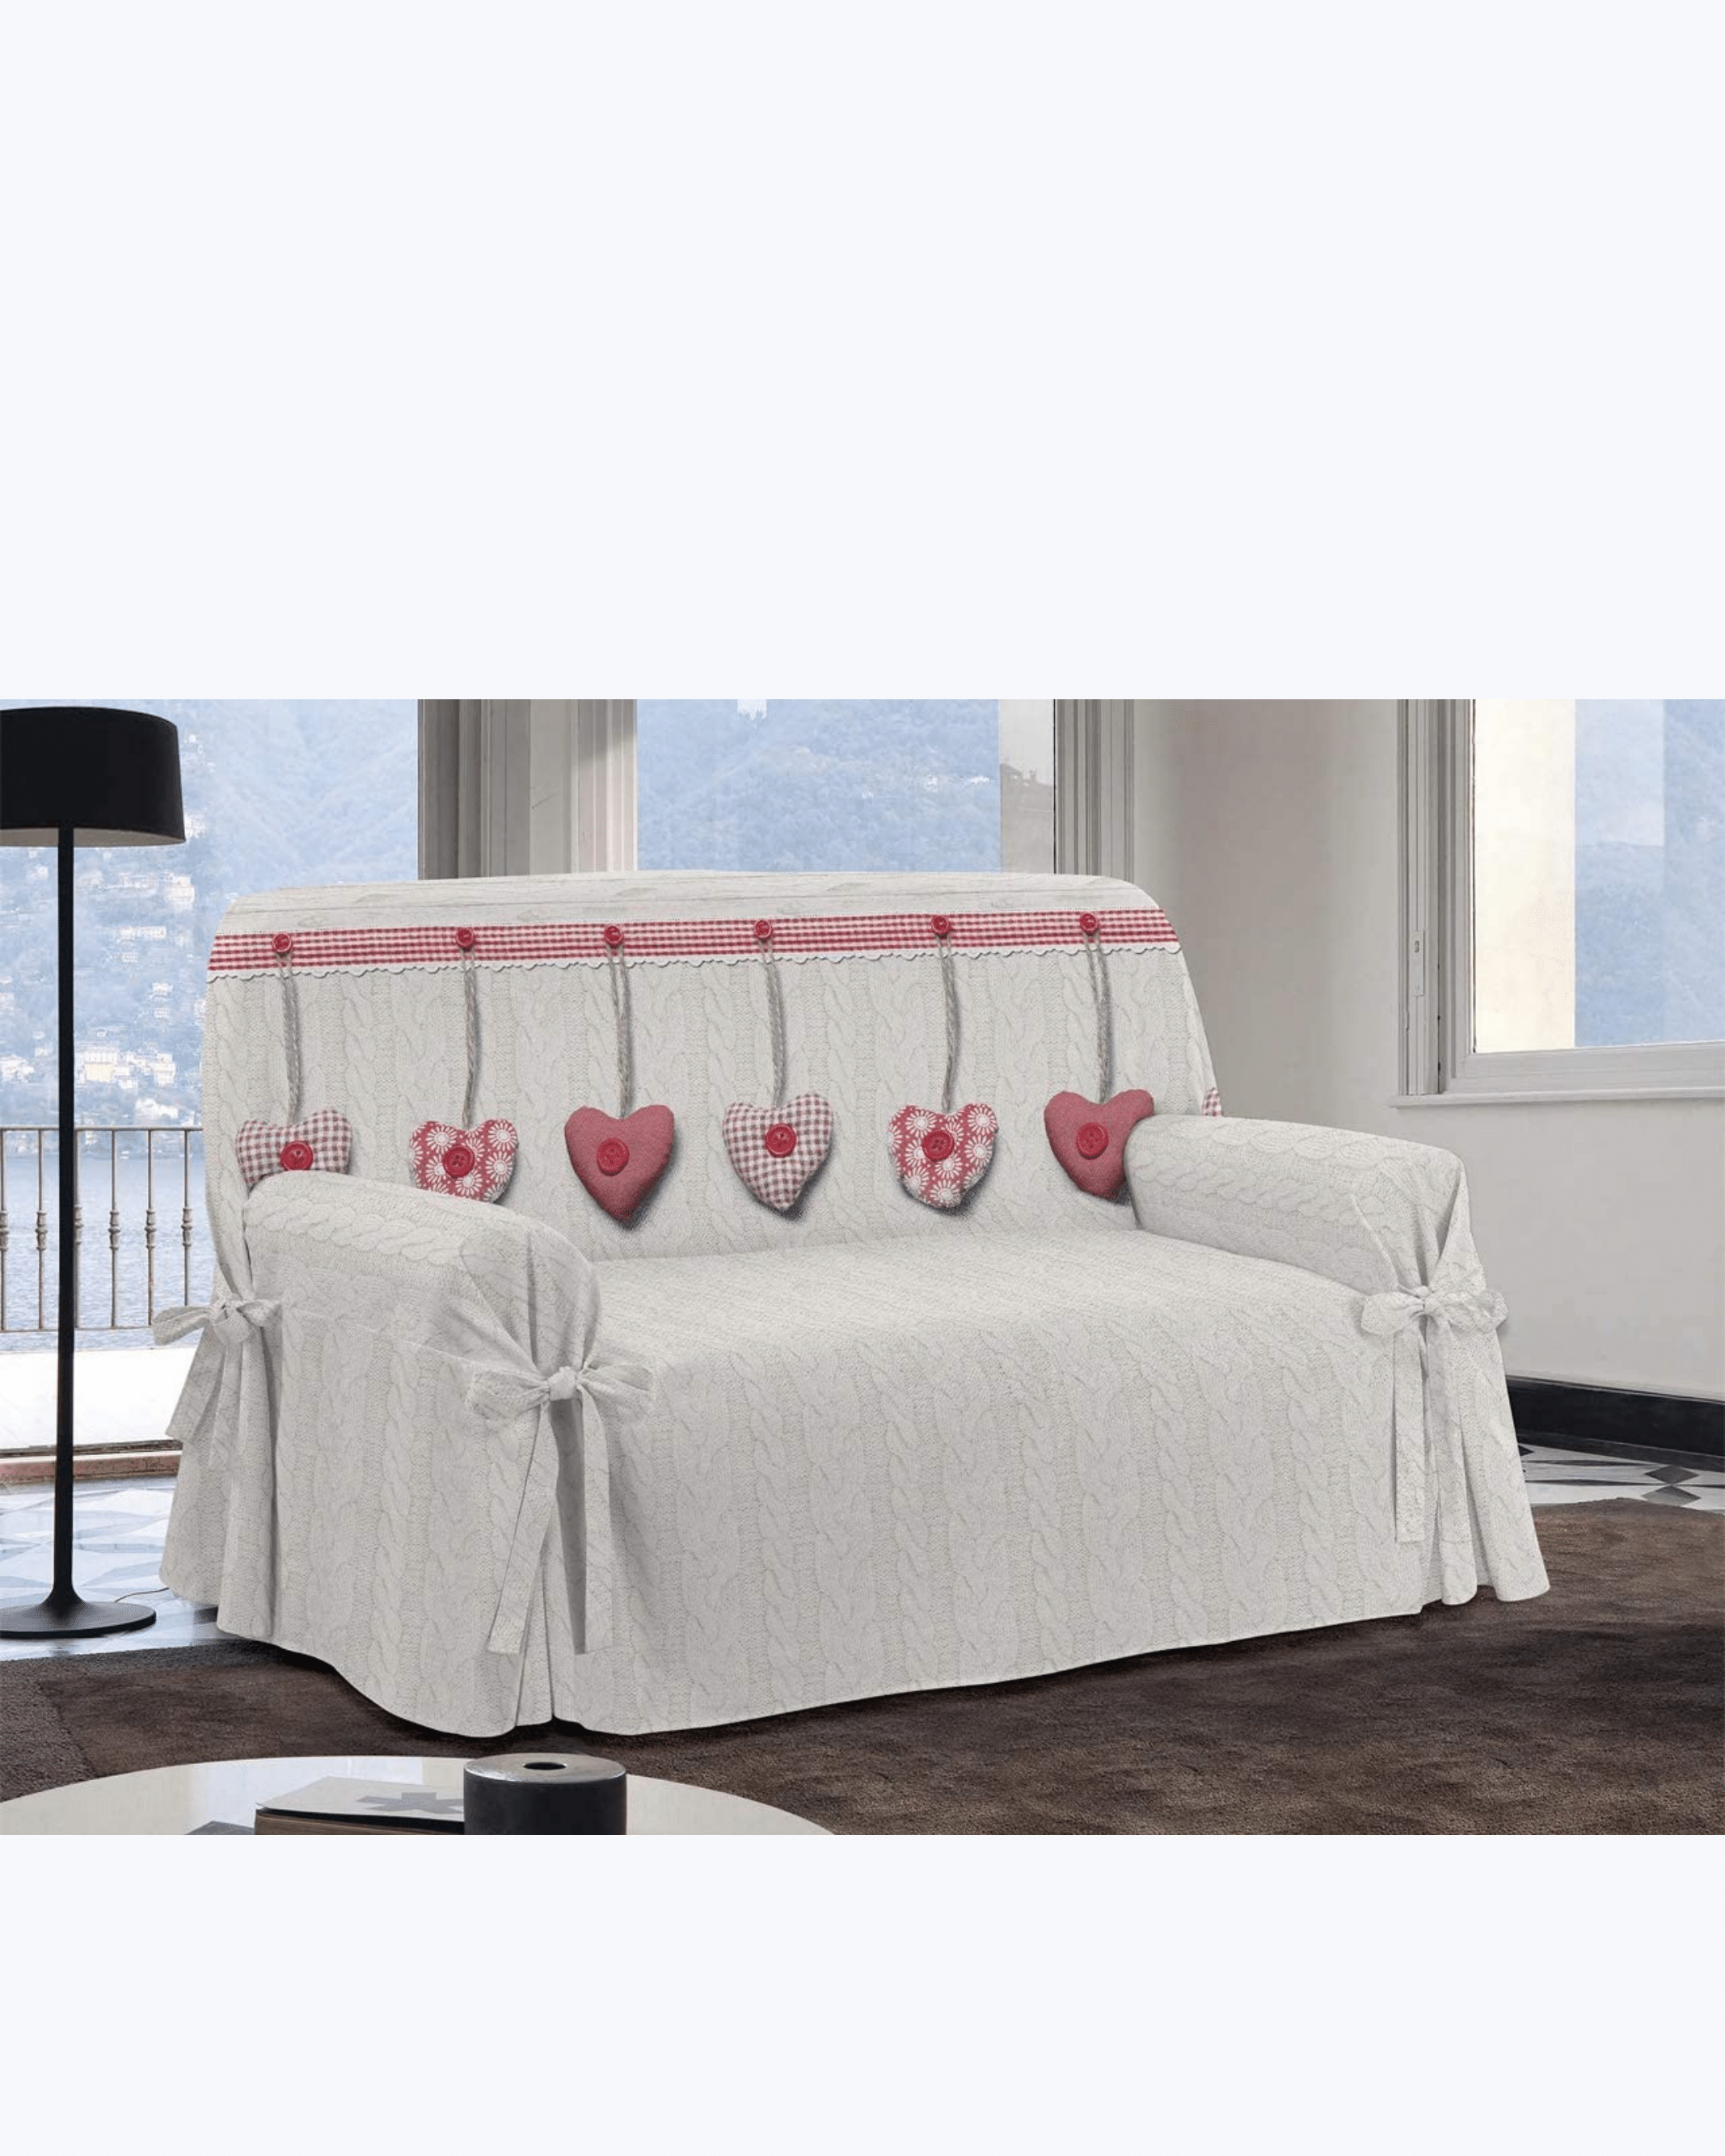 Ins stile divano telo copridivano copri asciugamano filato cotone  all-inclusive copridivano completo copridivano semplice universale